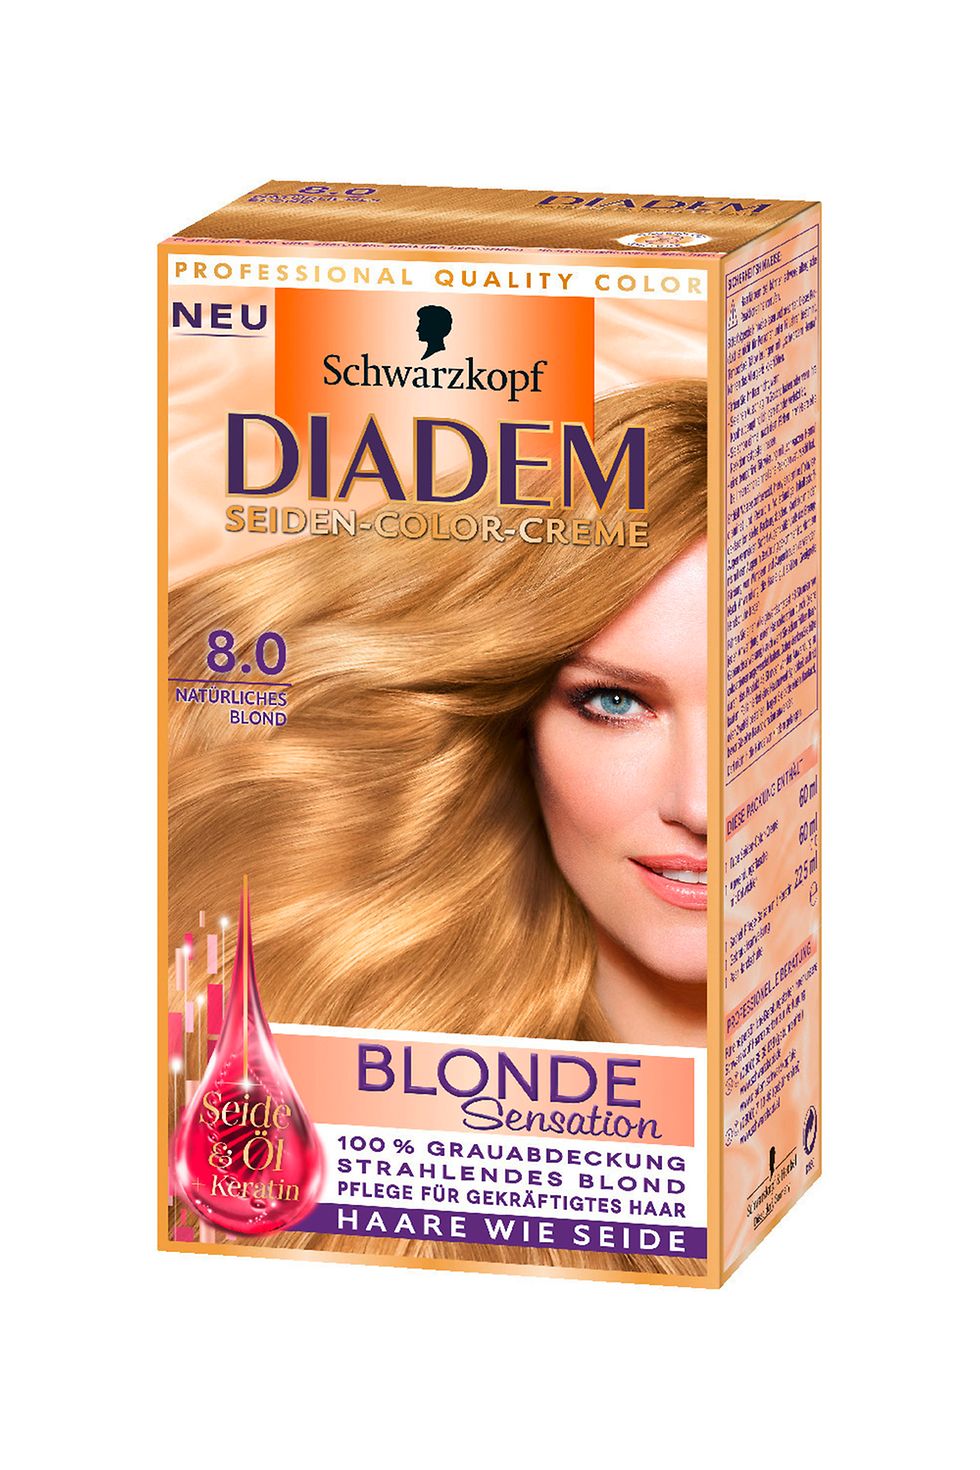 Diadem Seiden-Color-Creme Blonde Sensation 8.0 Natürliches Blond